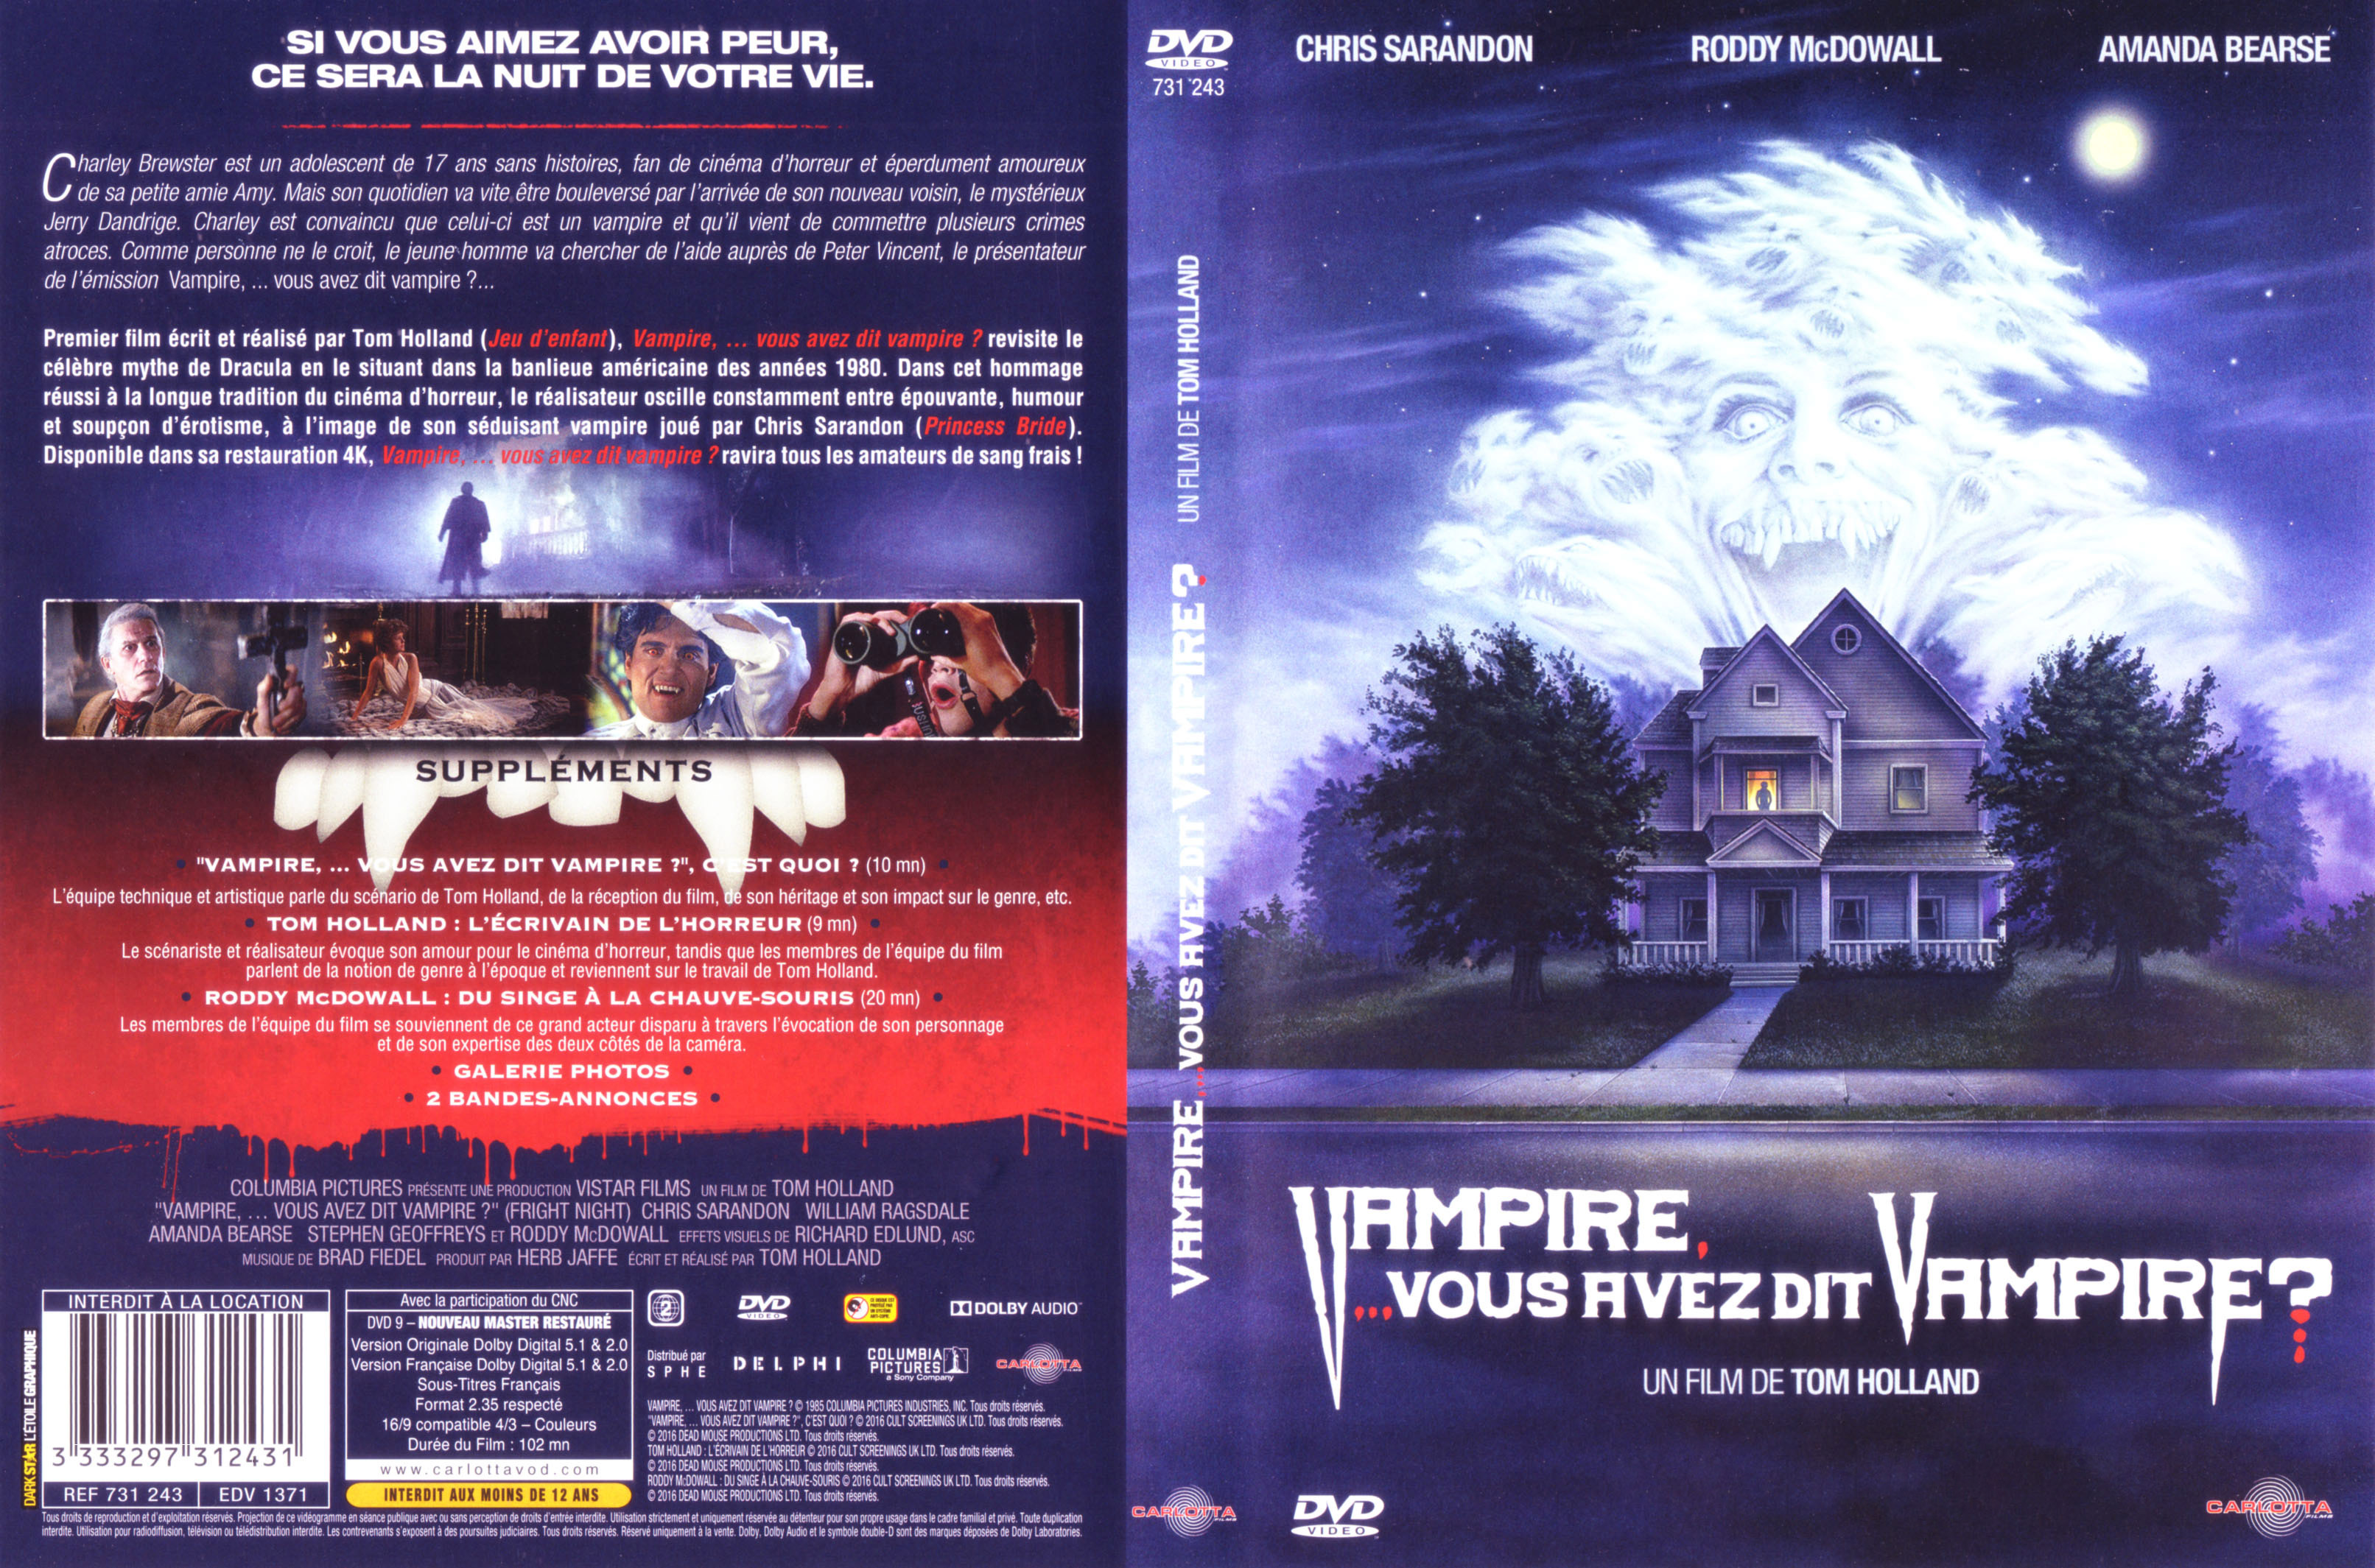 Jaquette DVD Vampire vous avez dit vampire v3